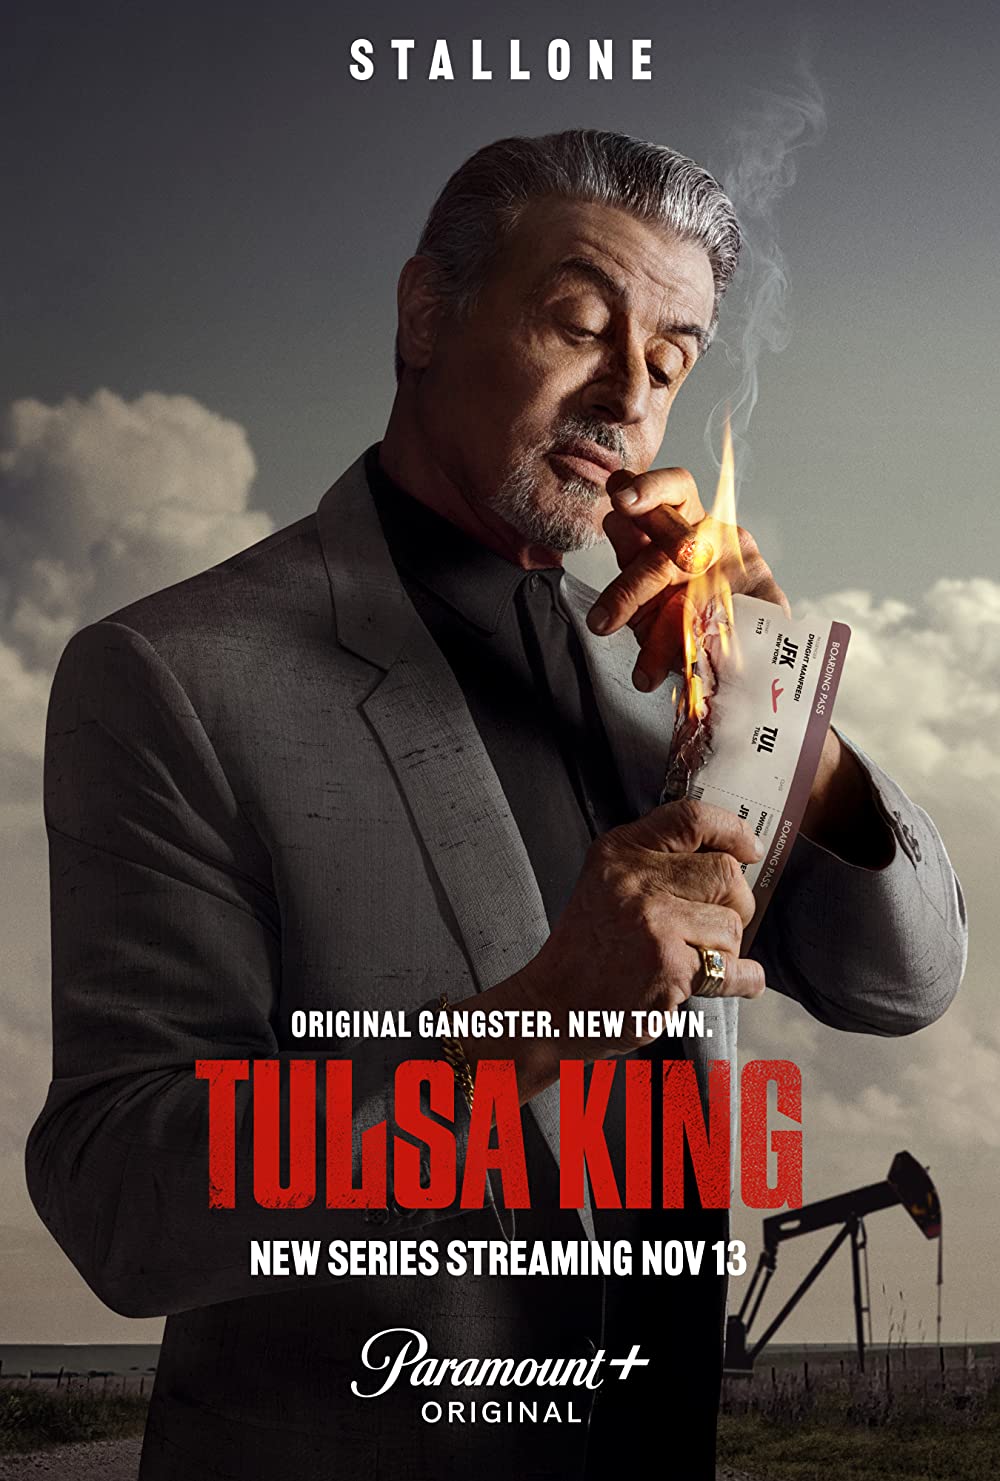 [TV] Tulsa King Season 1 (Netflix)